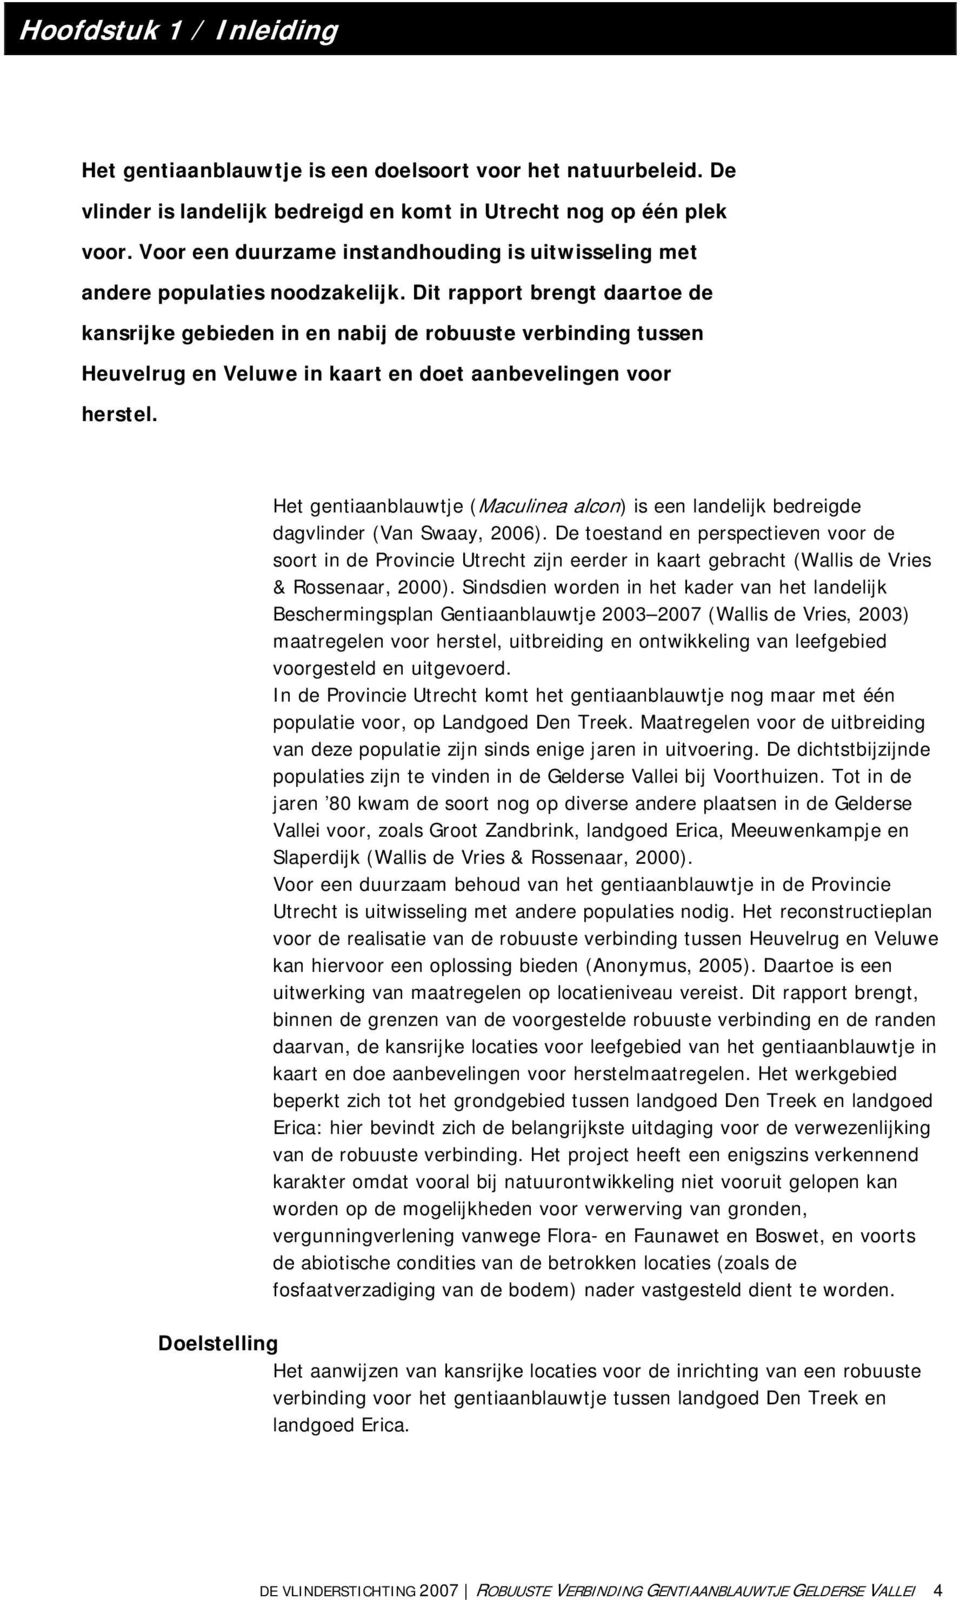 Dit rapport brengt daartoe de kansrijke gebieden in en nabij de robuuste verbinding tussen Heuvelrug en Veluwe in kaart en doet aanbevelingen voor herstel.